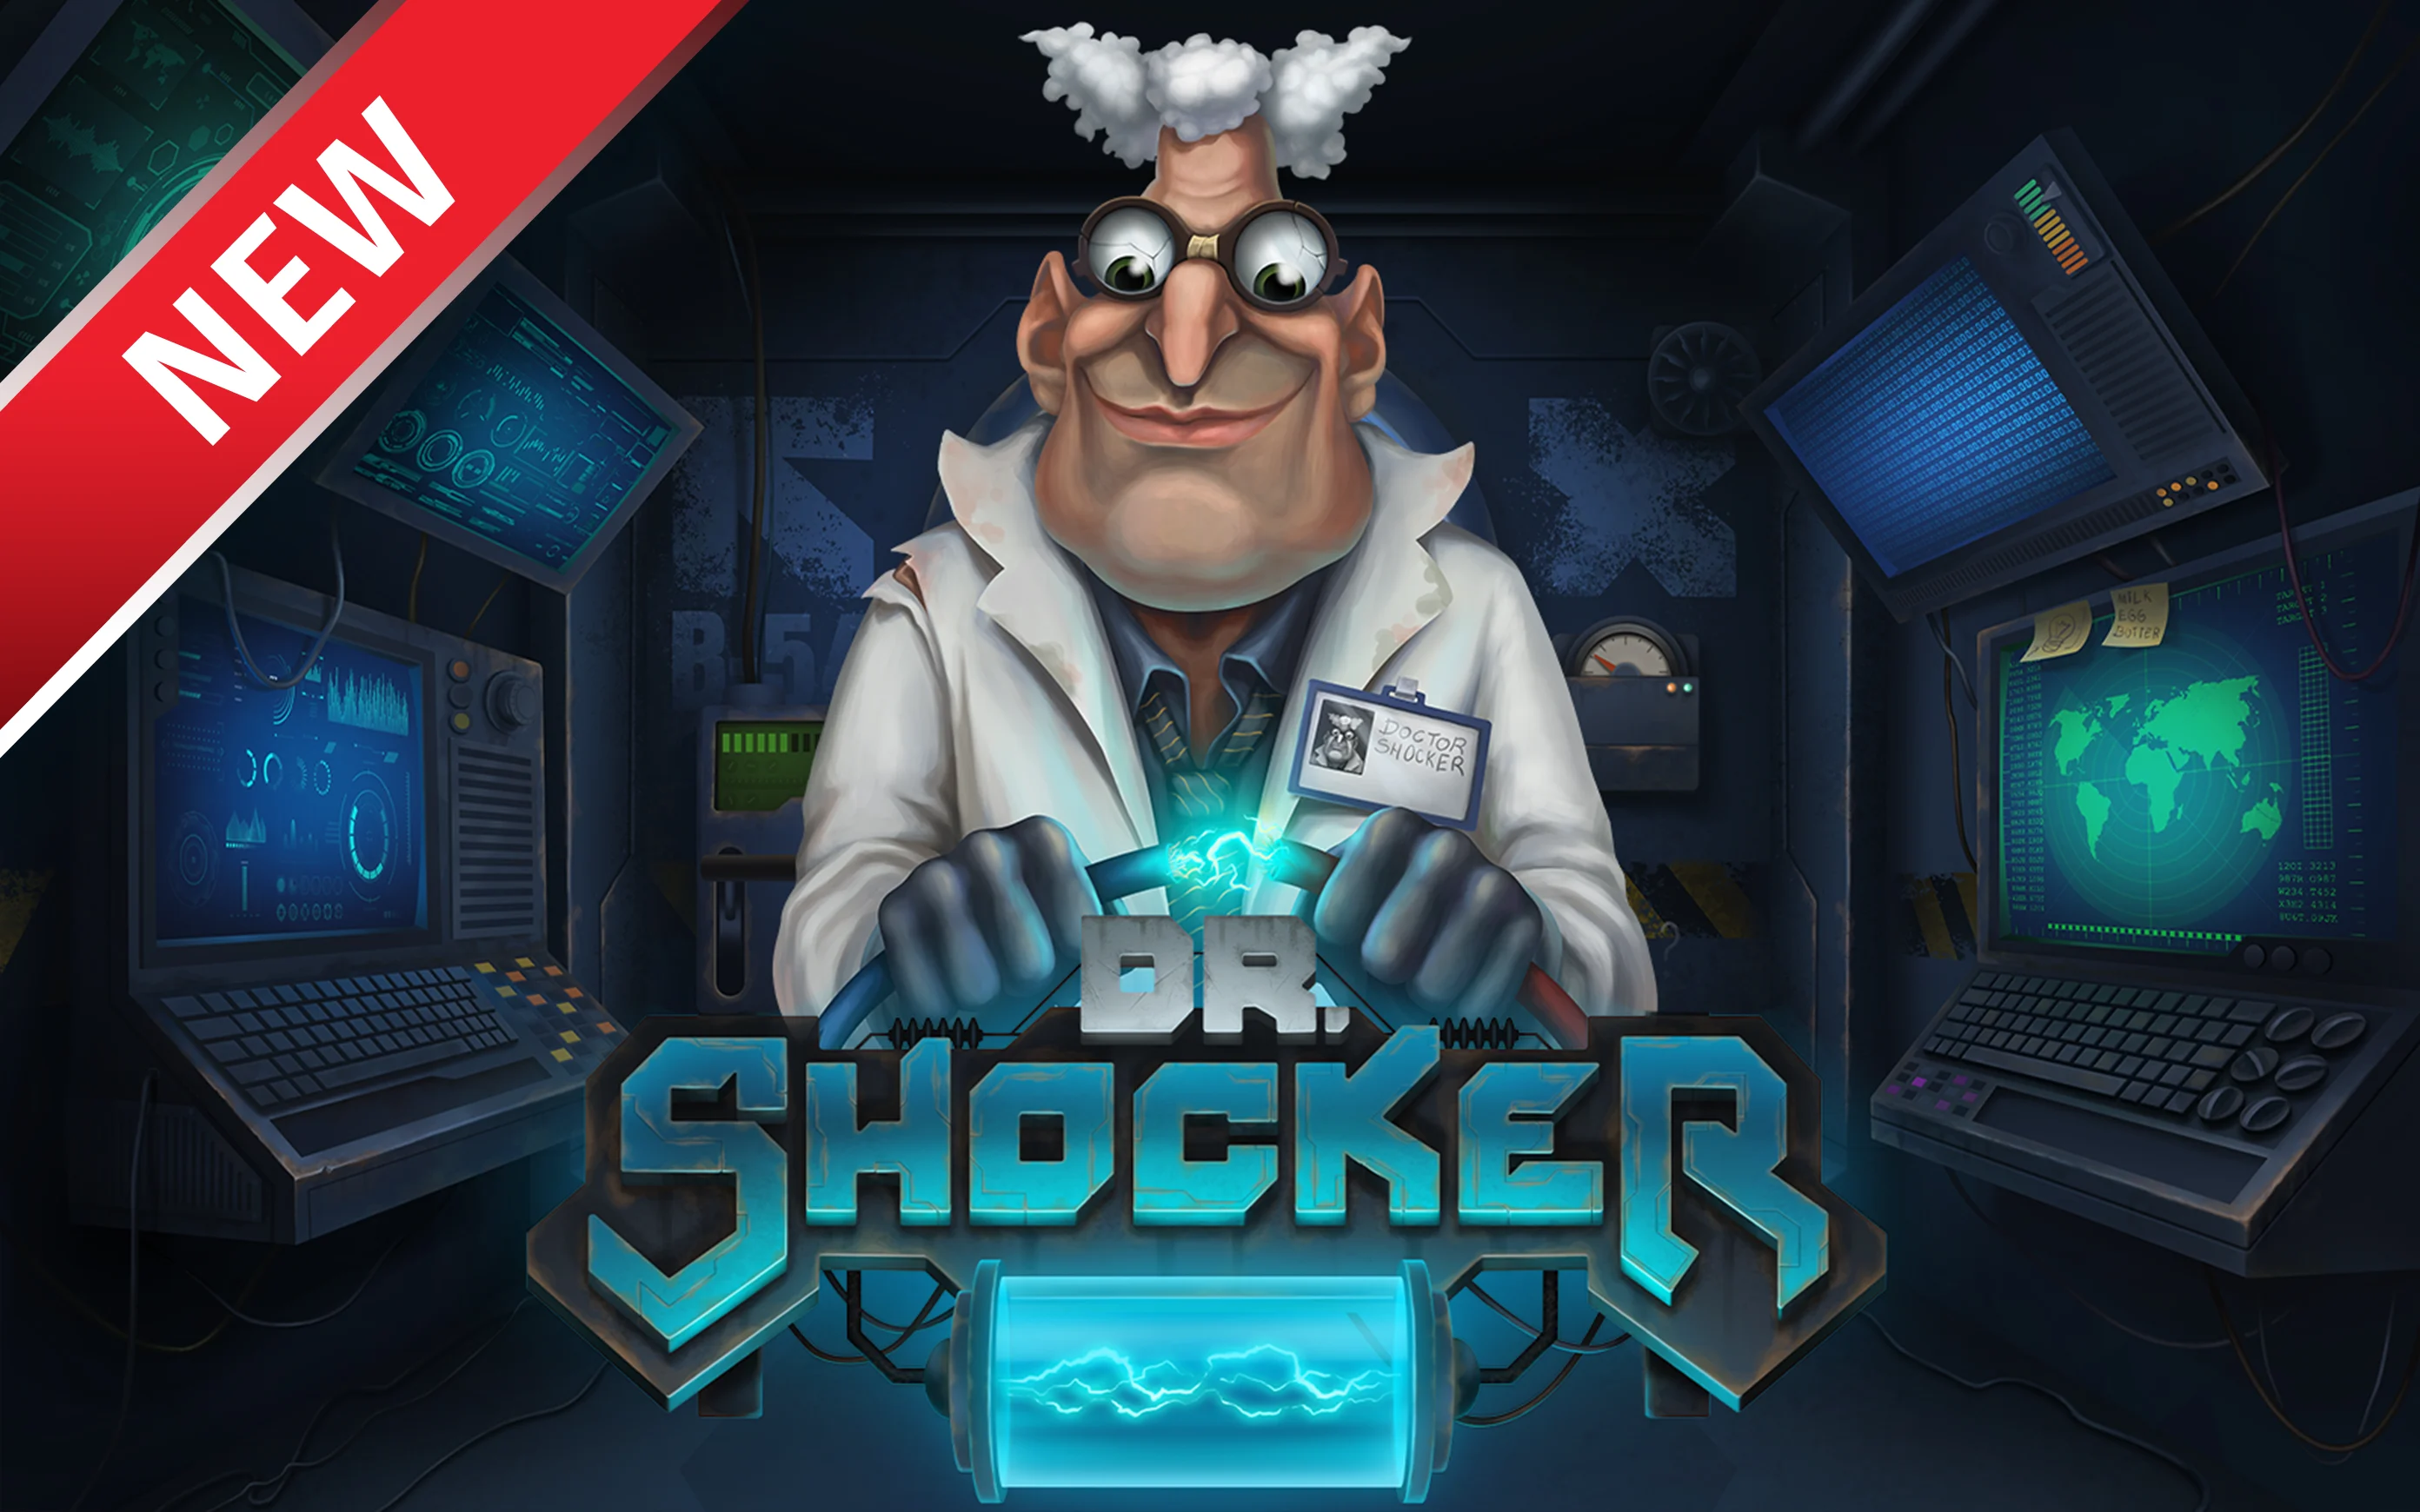 Chơi Dr. Shocker trên sòng bạc trực tuyến Starcasino.be